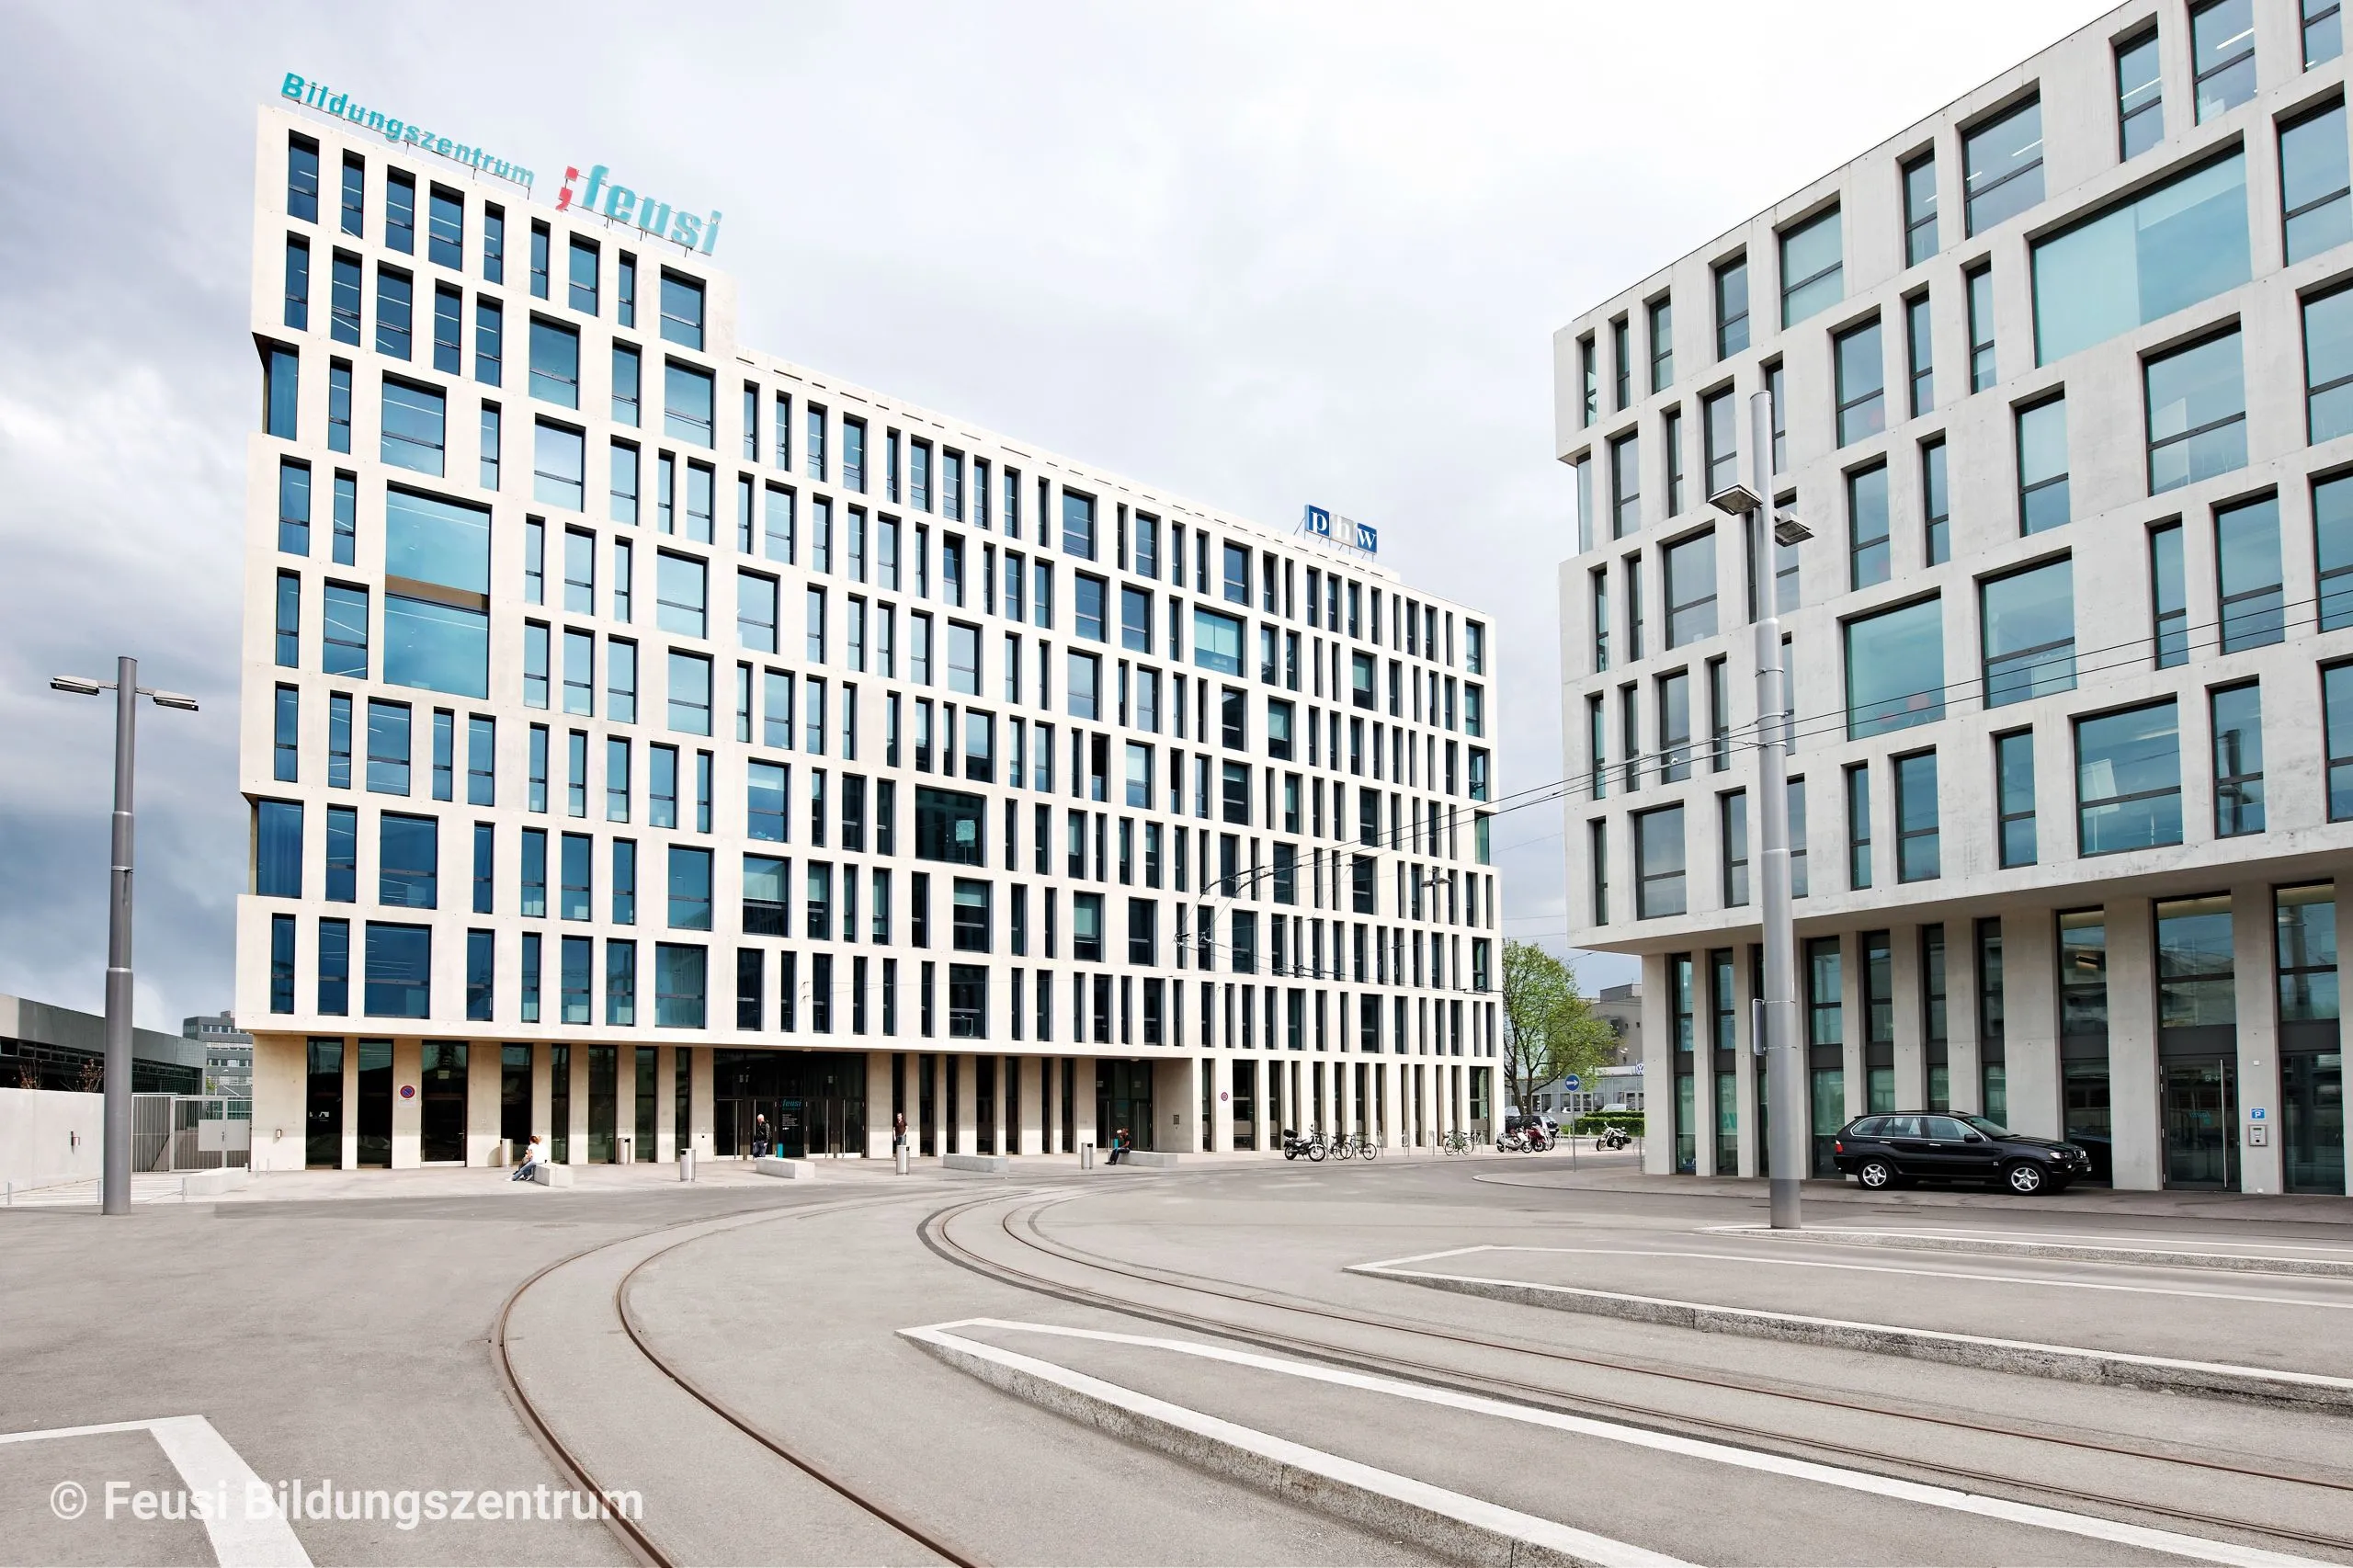 Aveniq eröffnet in Wankdorf den ersten Standort im Kanton Bern. Bild: aveniq.ch